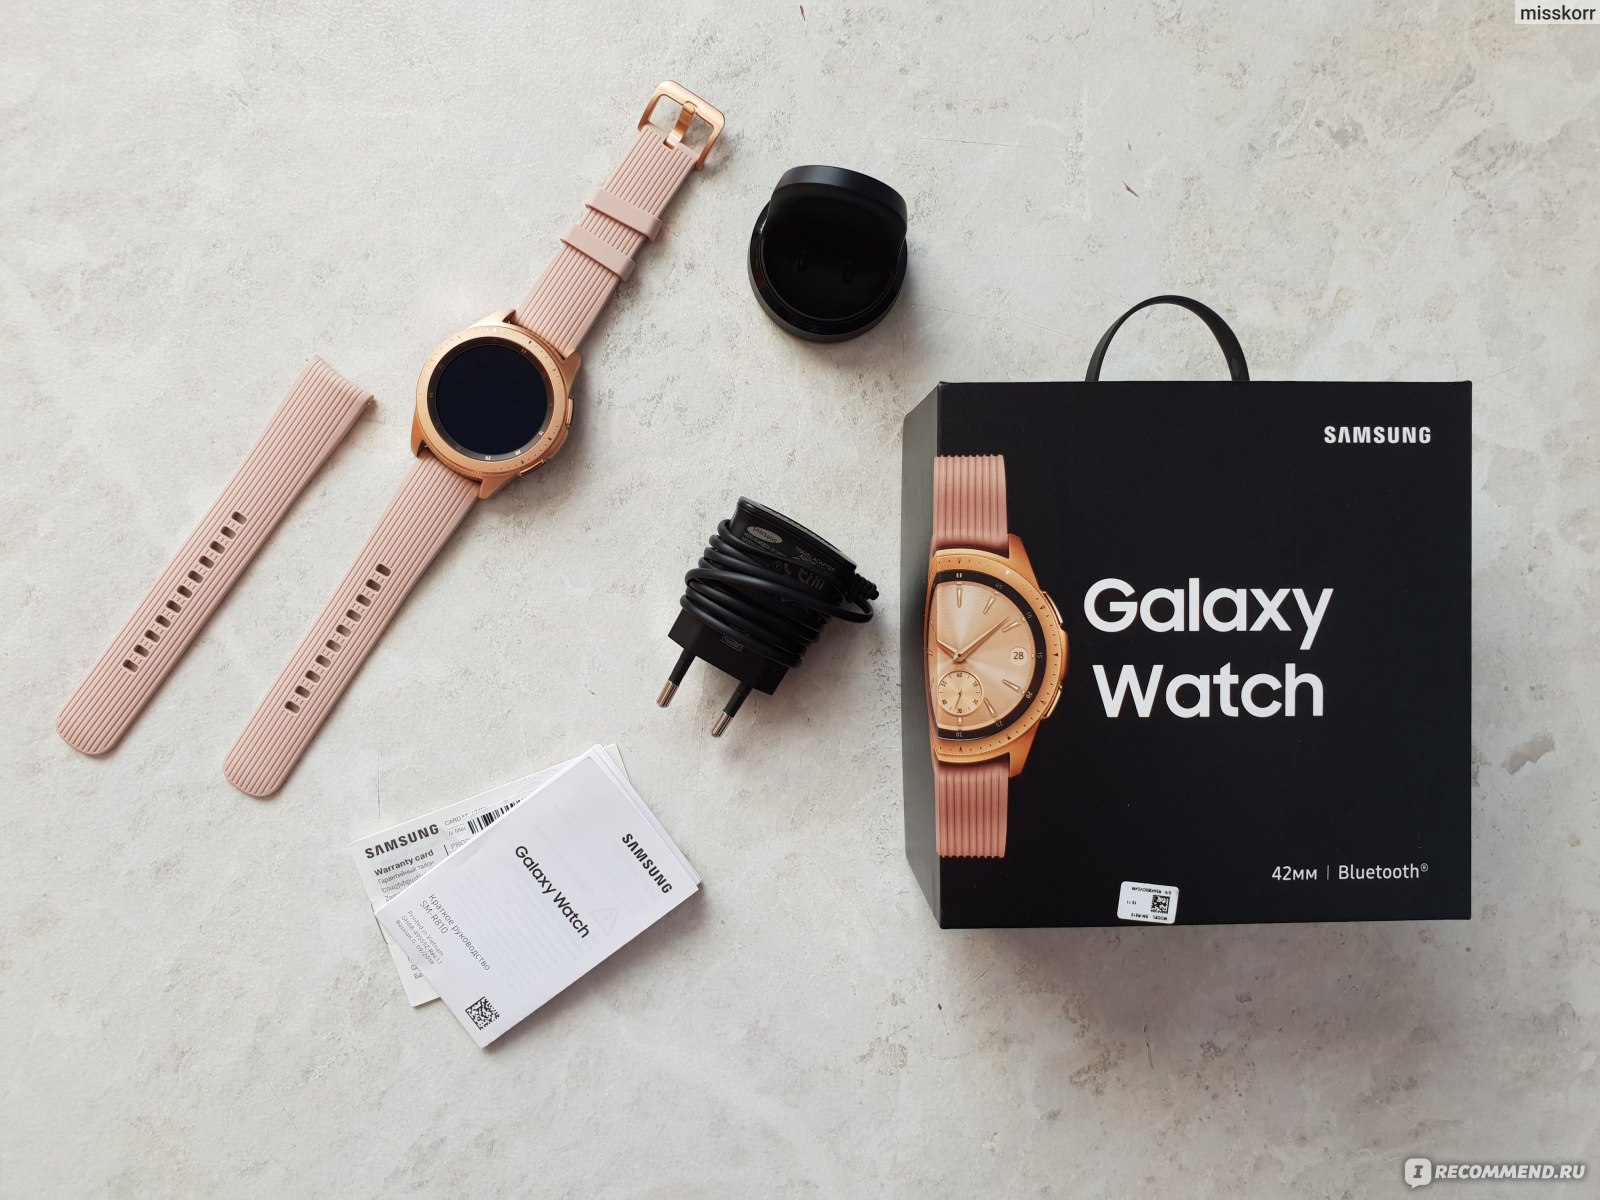 Umnye Chasy Samsung Galaxy Watch Megaobzor Smart Chasy Galaxy Watch Stilnyj Sovremennyj Aksessuar Ili Dorogaya Igrushka Sovety Pri Chrezmernom Potrebleniem Zaryada Otzyvy